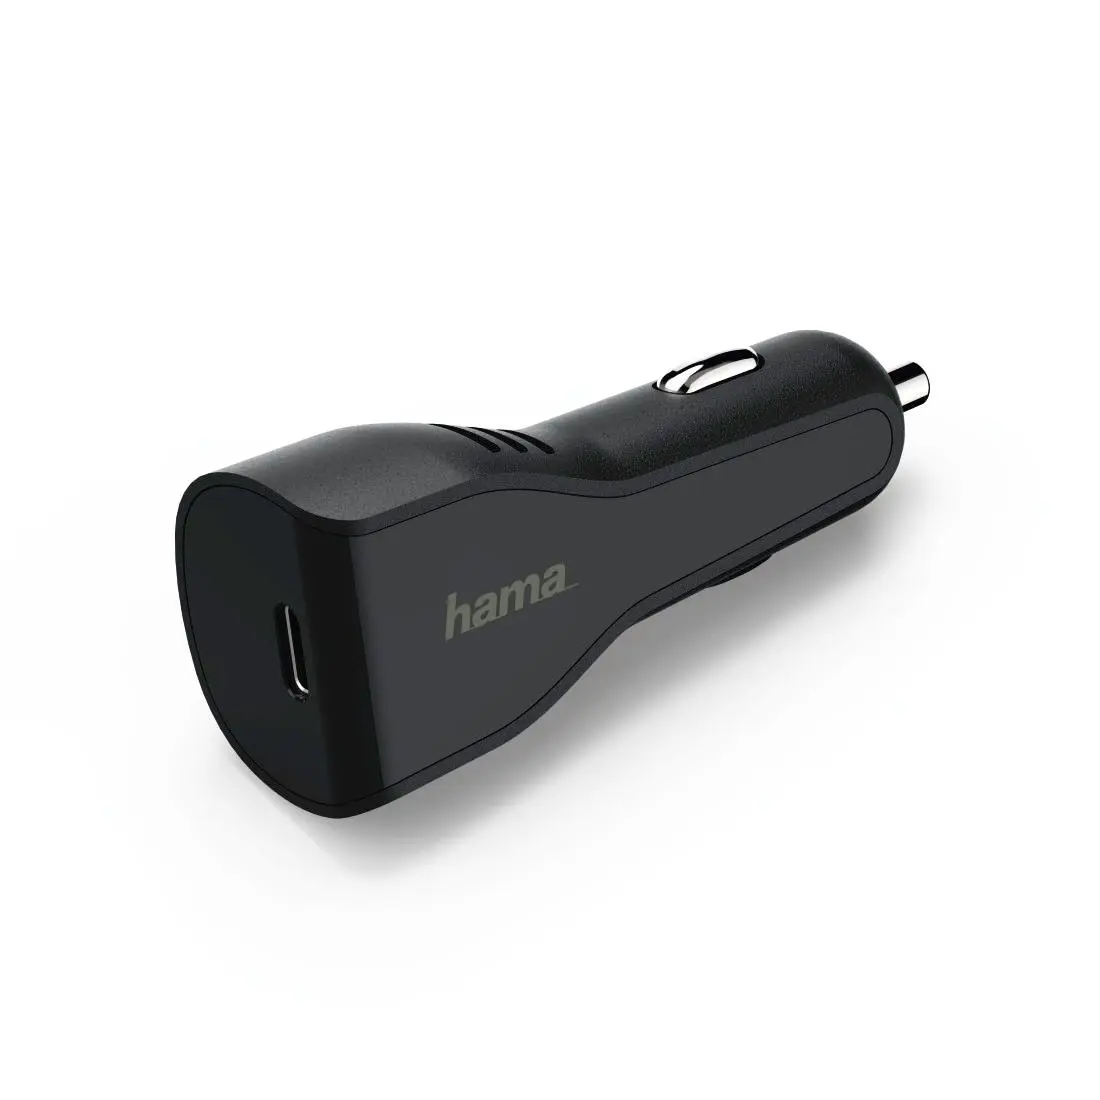 Incarcator auto Hama, USB de tip C, Power Delivery (PD), 3A, Negru